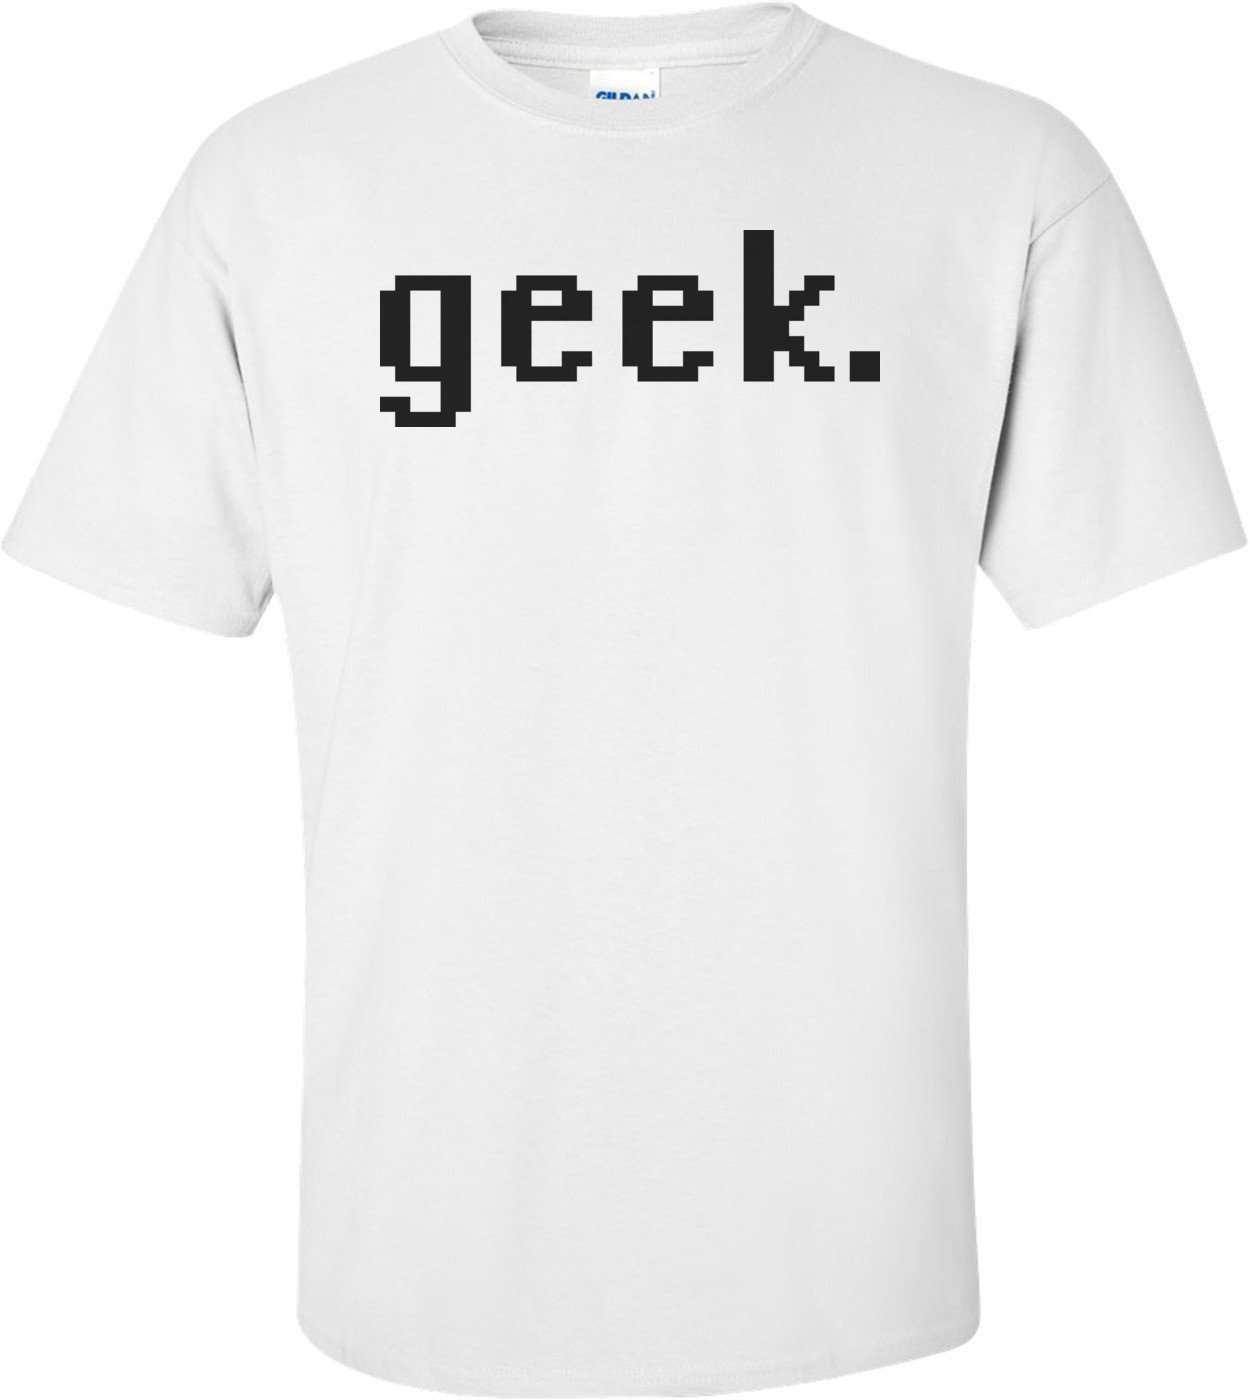 Geek. T-shirt